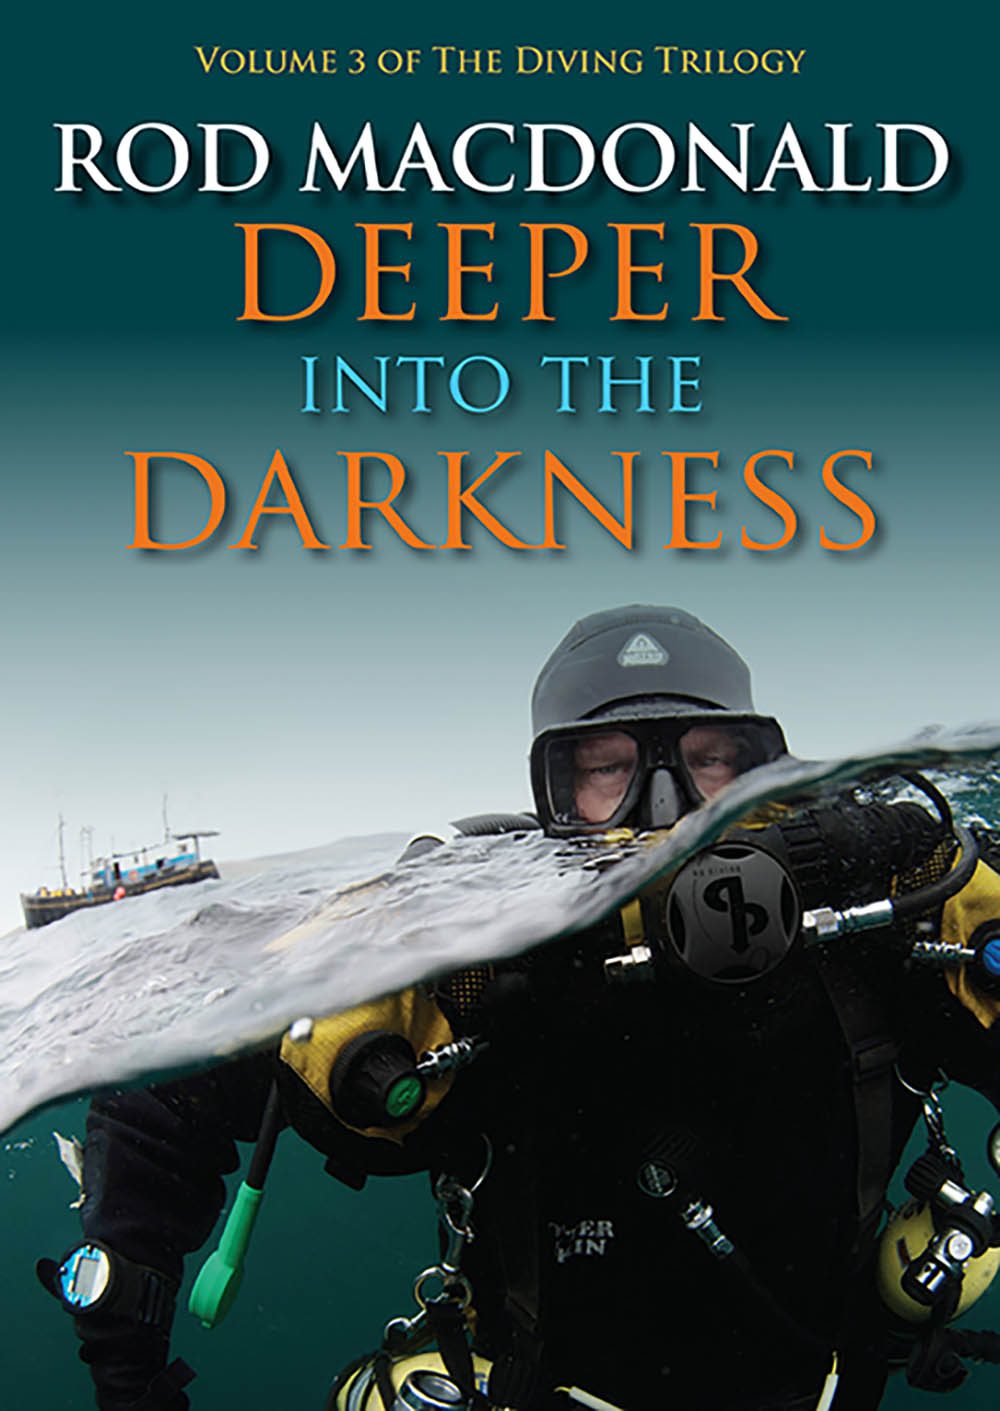 1018 reviews deeper darkness